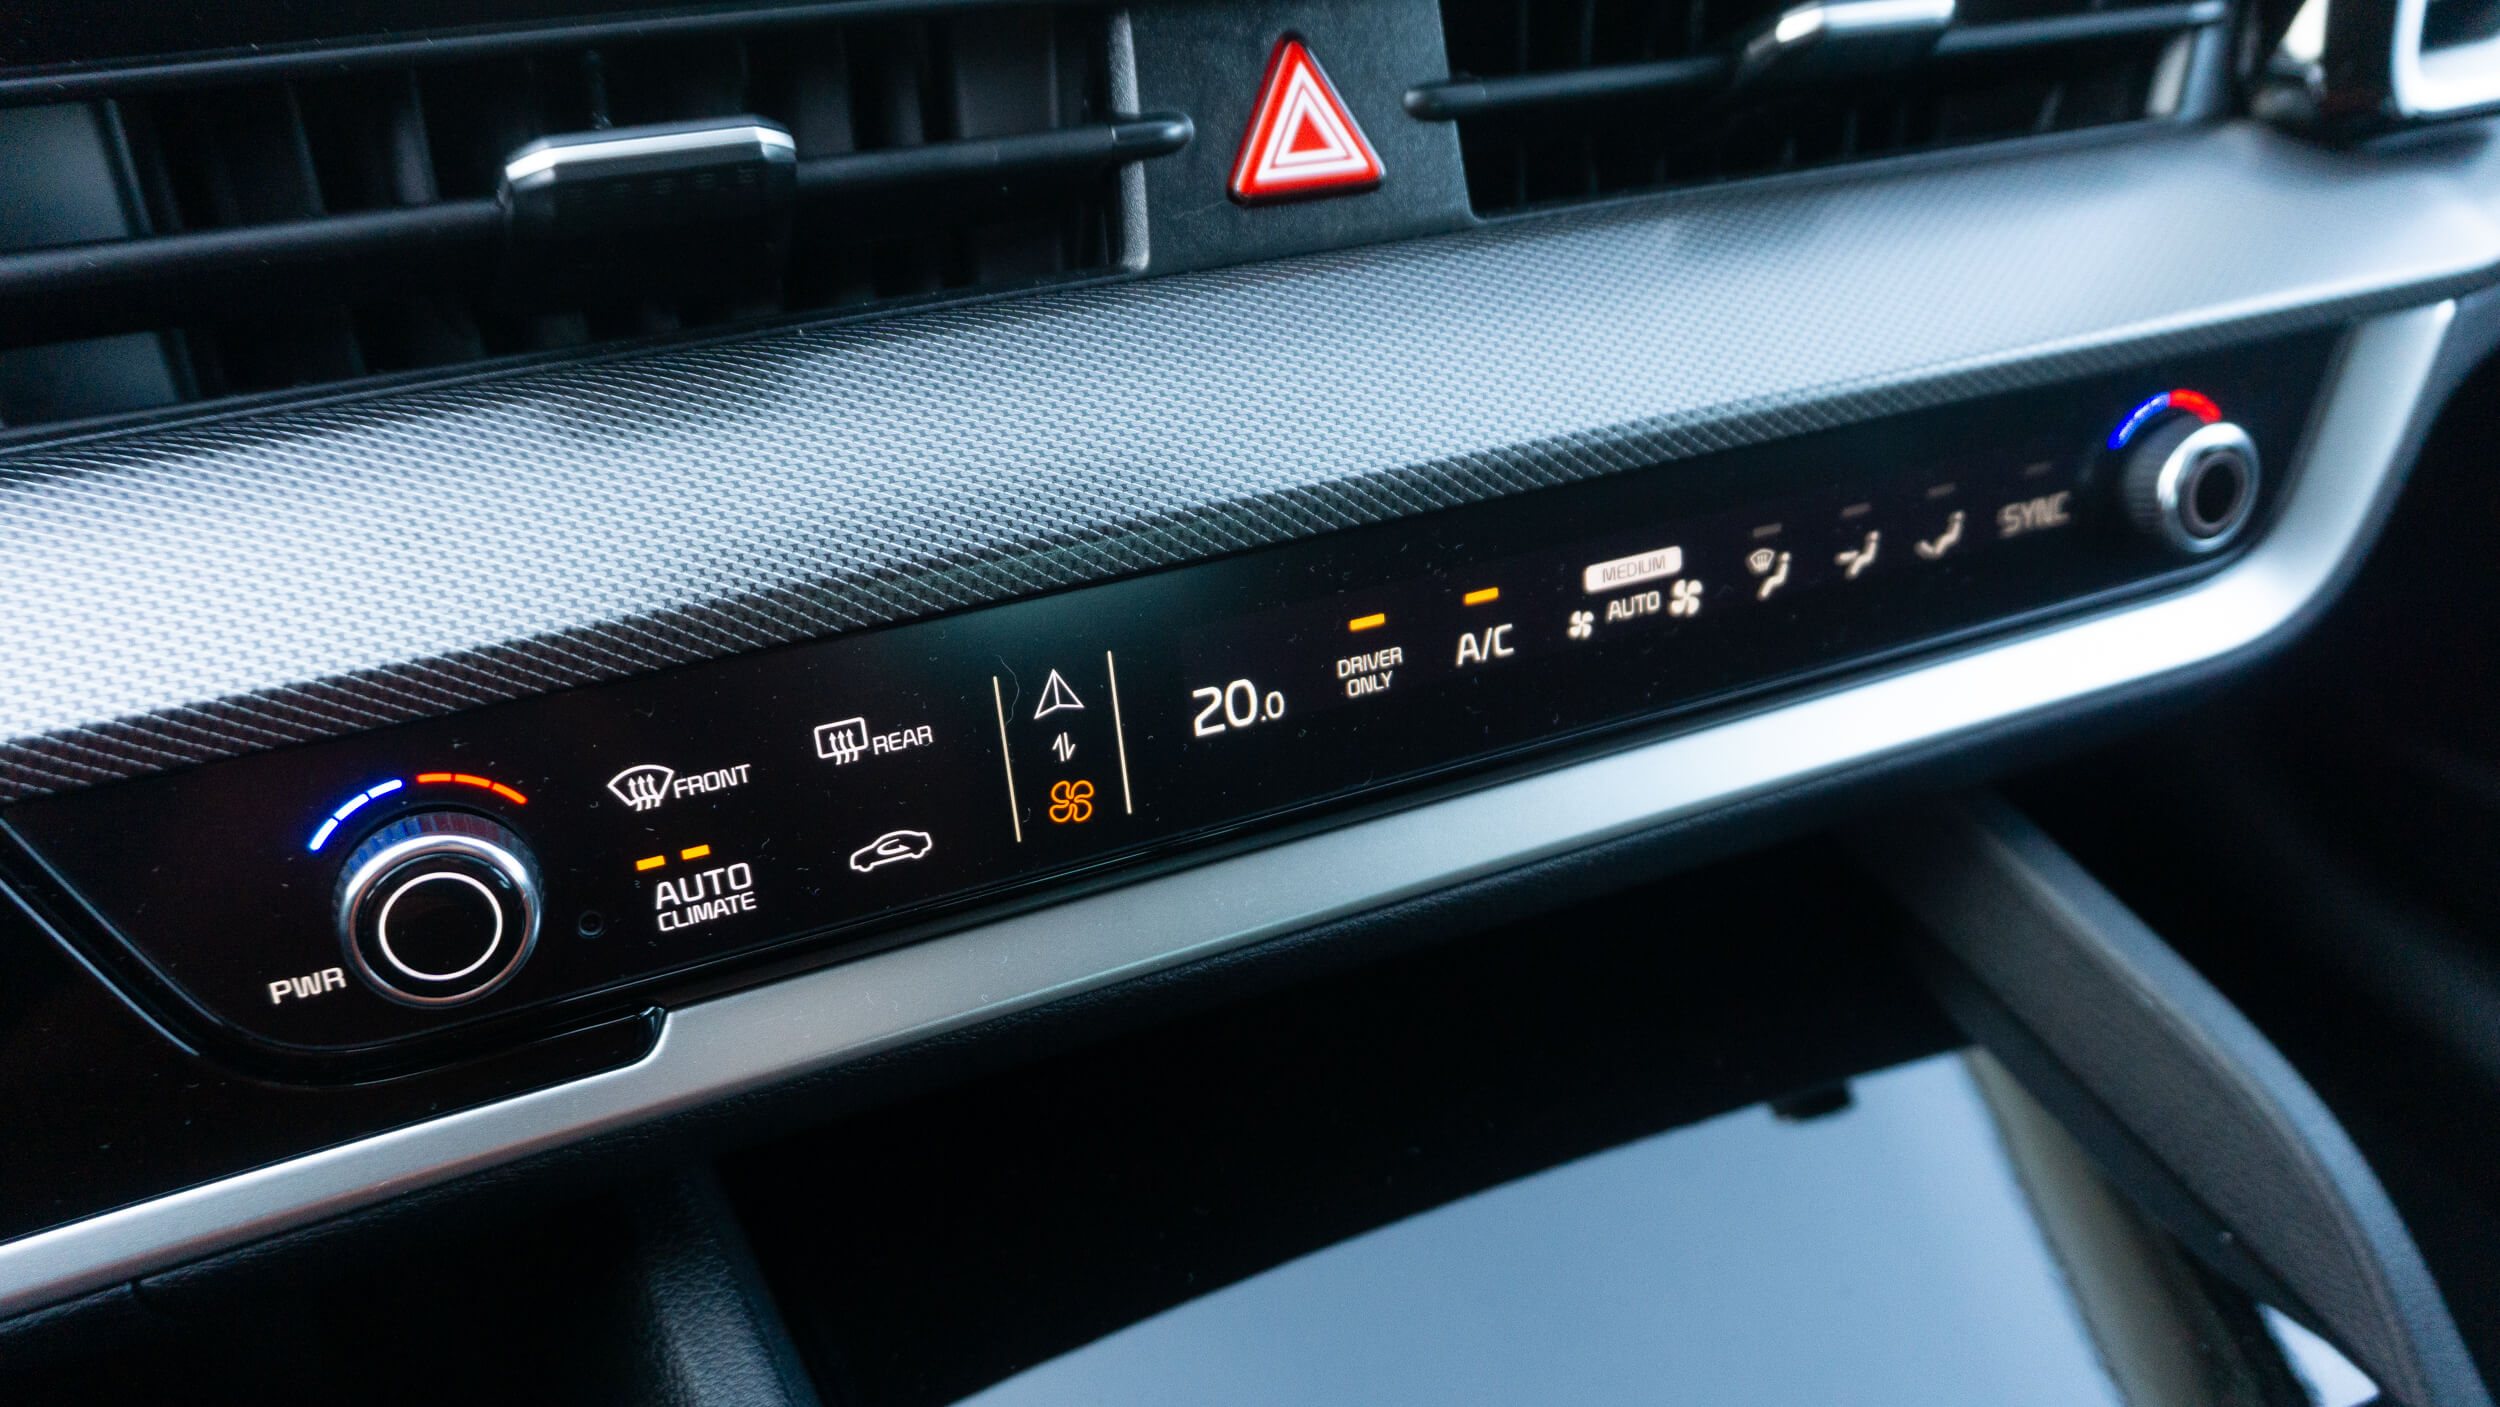 Kia Sportage PHEV - comandos táteis na consola em modo climatização